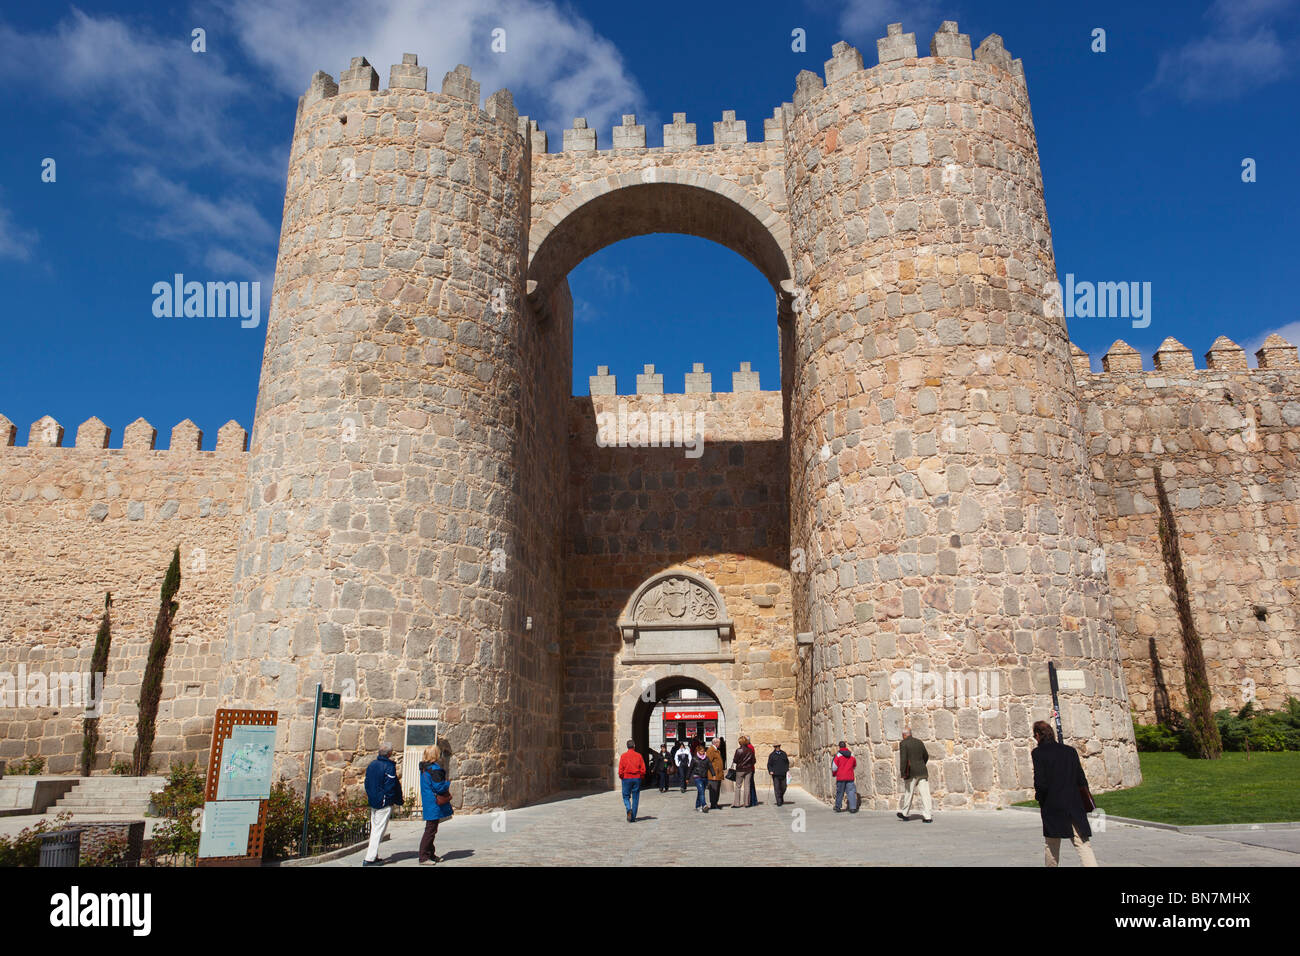 Avila, Avila Province, Espagne. La Puerta del Alcazar et les remparts de la ville vu de la Plaza de Santa Teresa. Banque D'Images